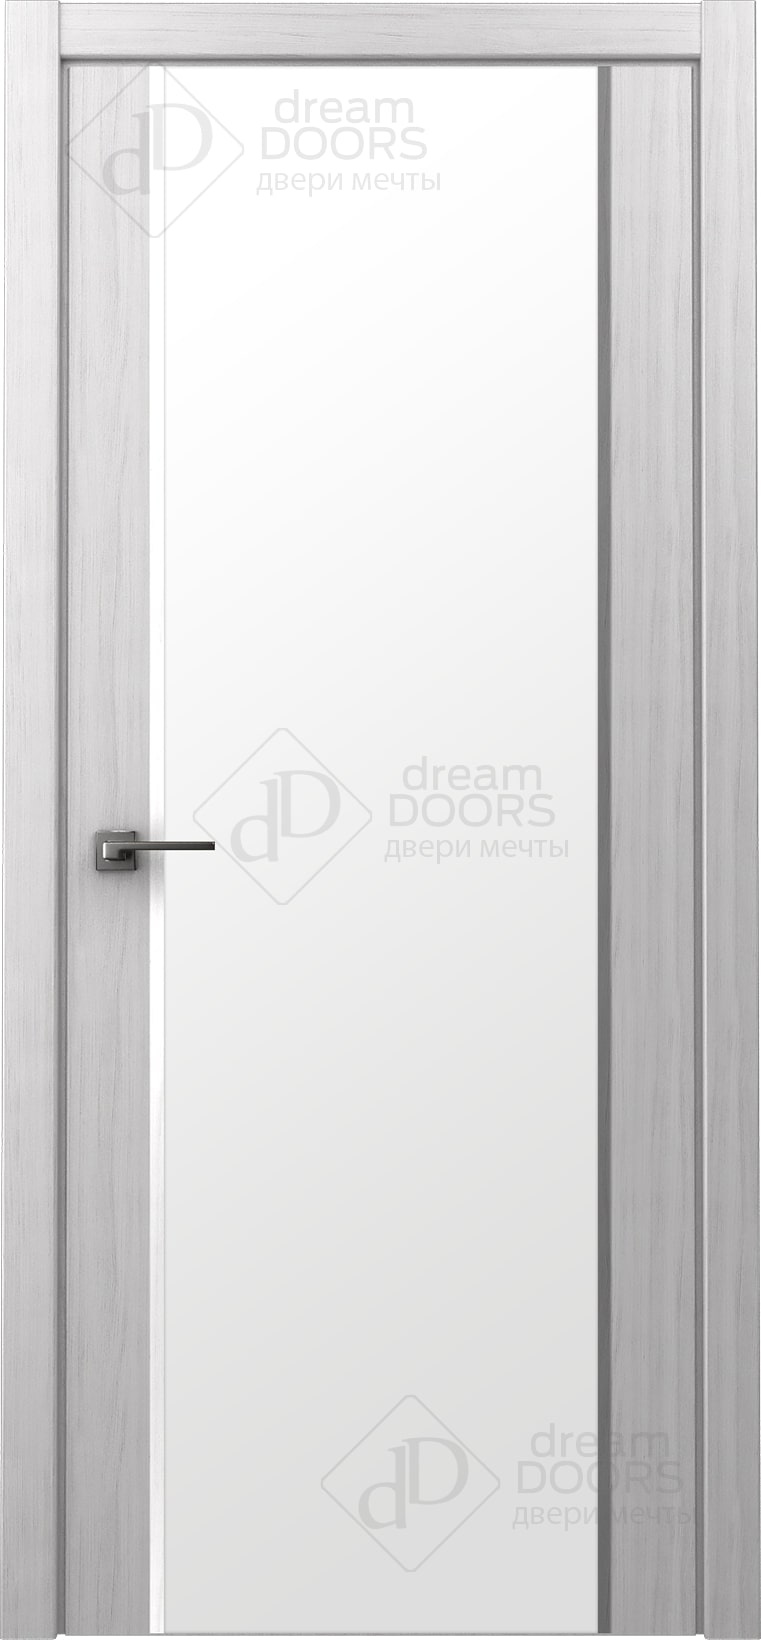 Dream Doors Межкомнатная дверь Стиль полное ПО, арт. 20078 - фото №3